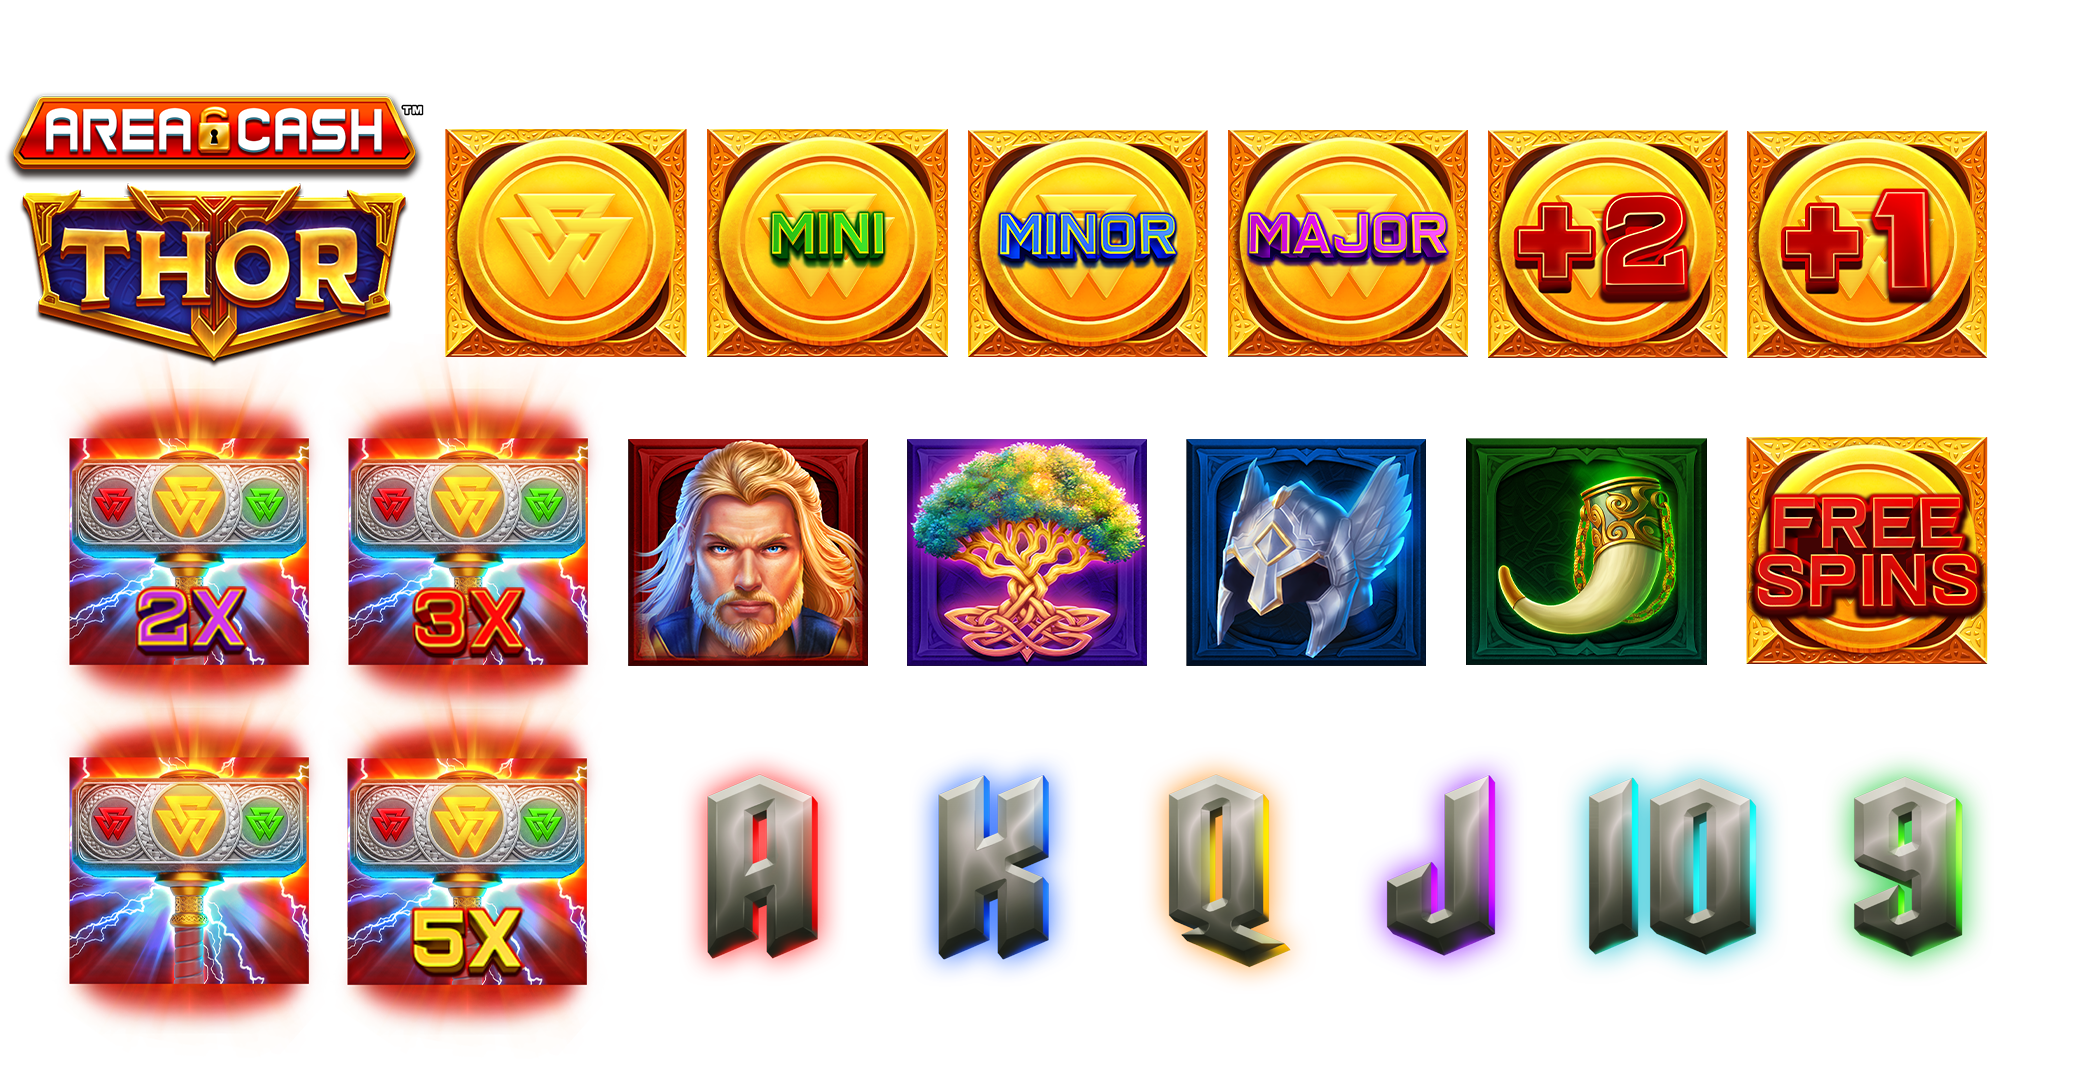 Area Cash Thor Bonus Symbols